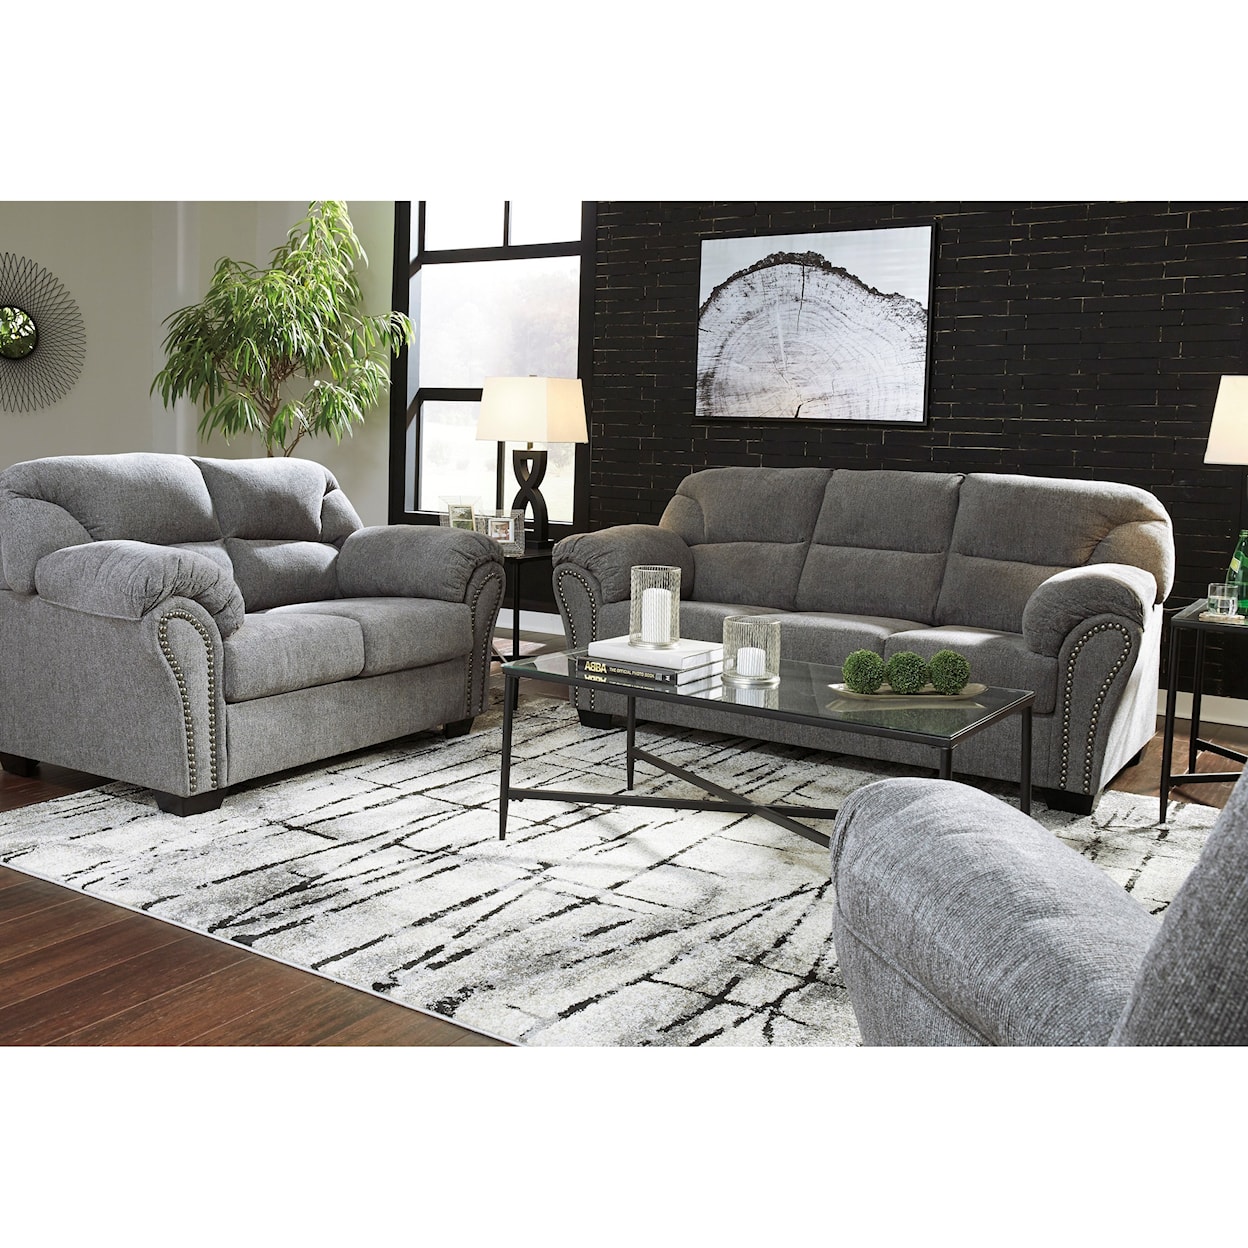 Ashley Furniture Benchcraft Allmaxx Sofa